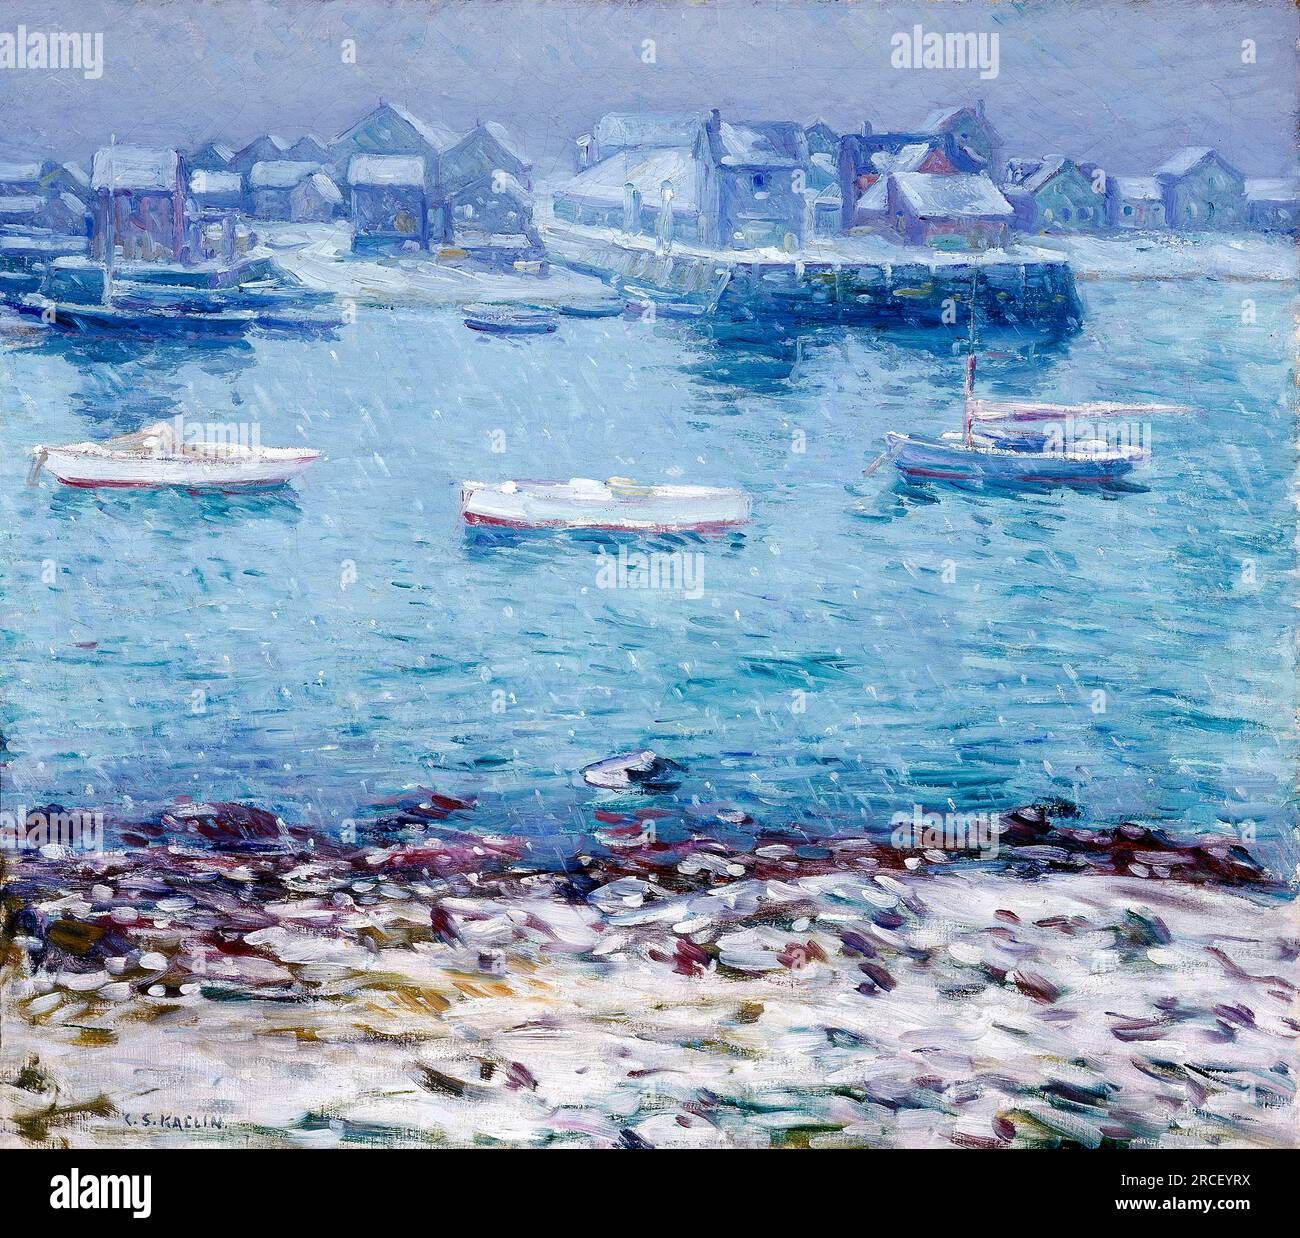 Winter in Harbor vom amerikanischen impressionistischen Maler Charles Salis Kaelin (1858-1929), Öl auf Leinwand, 1916 Stockfoto